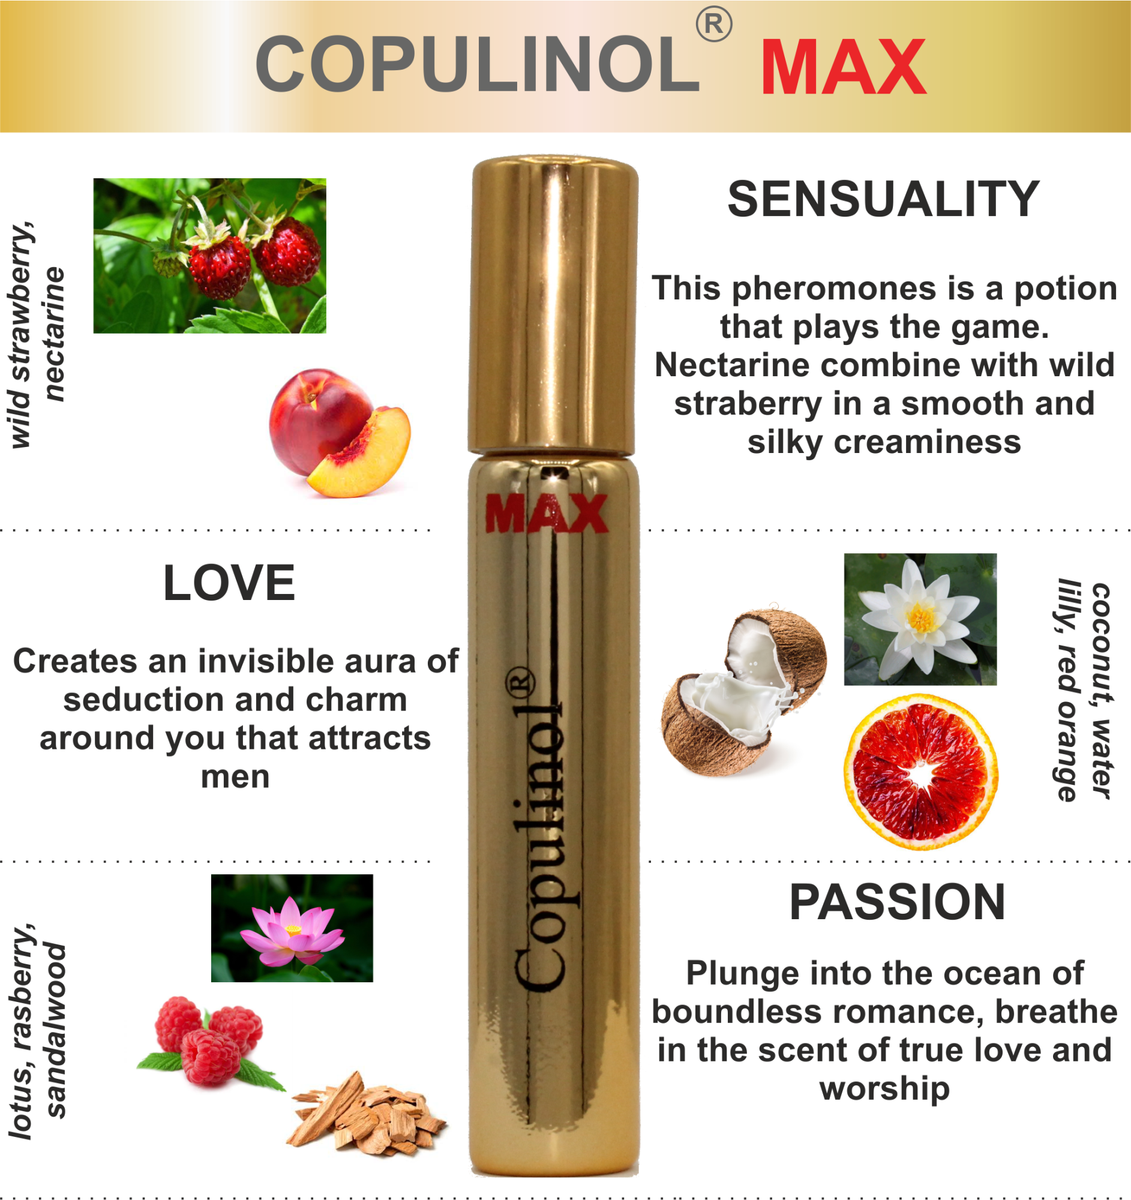 Copulinol MAX pheromone for women wild strawberry nectarine lotus rasberry romance passion flirt